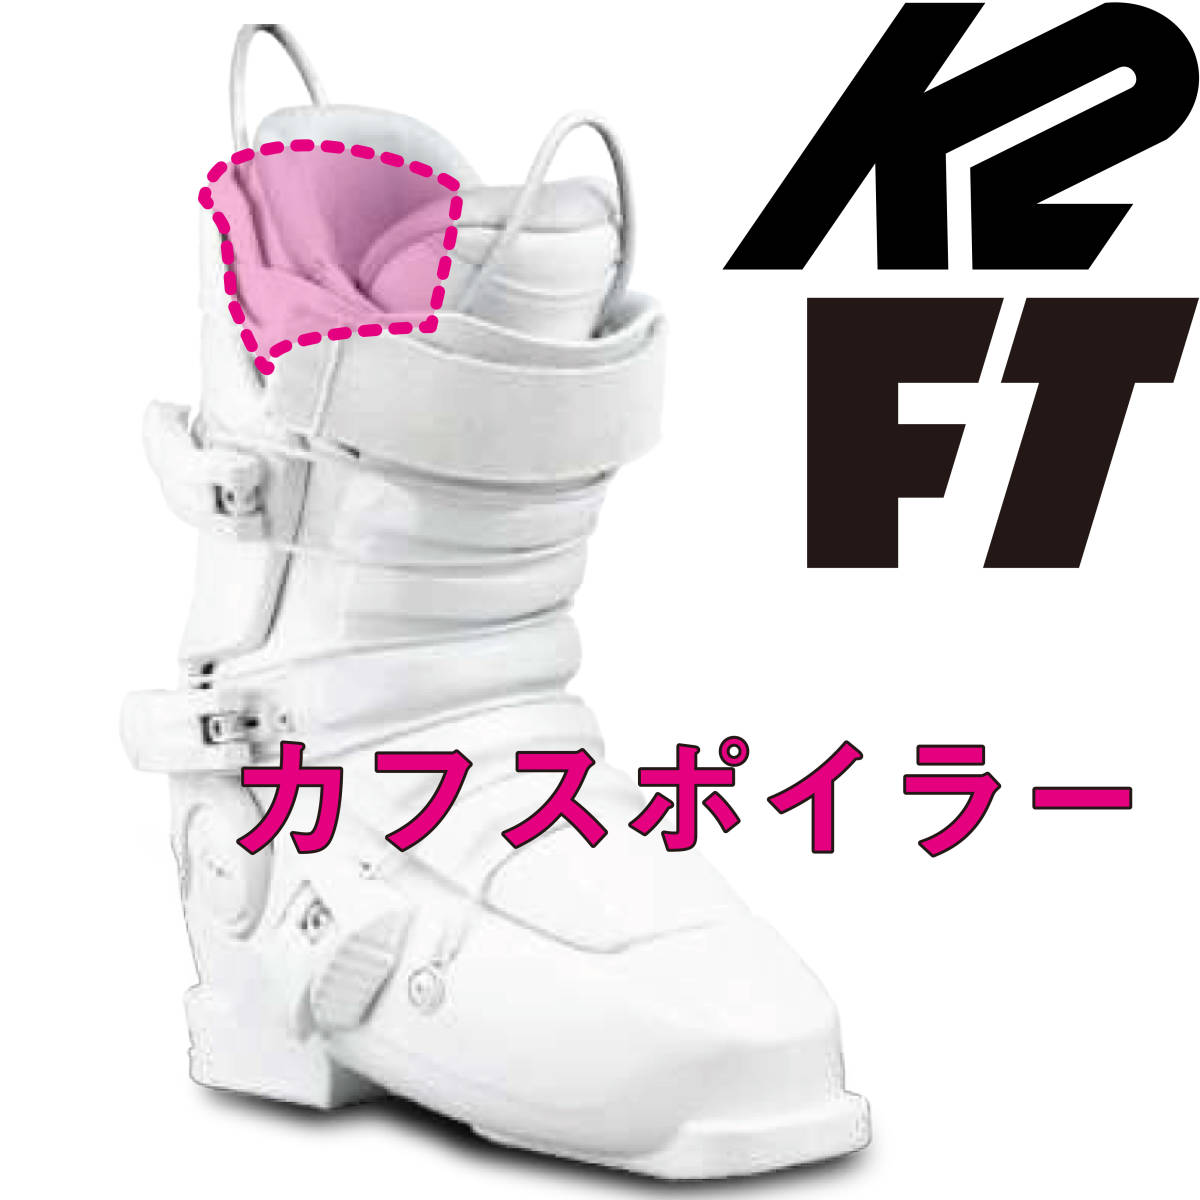 K2 FT cuff spoiler f rutile to full tilt FULLTILT FULL TILT BOOTS ski boots 25.0 25.5 REVOLVER PRO